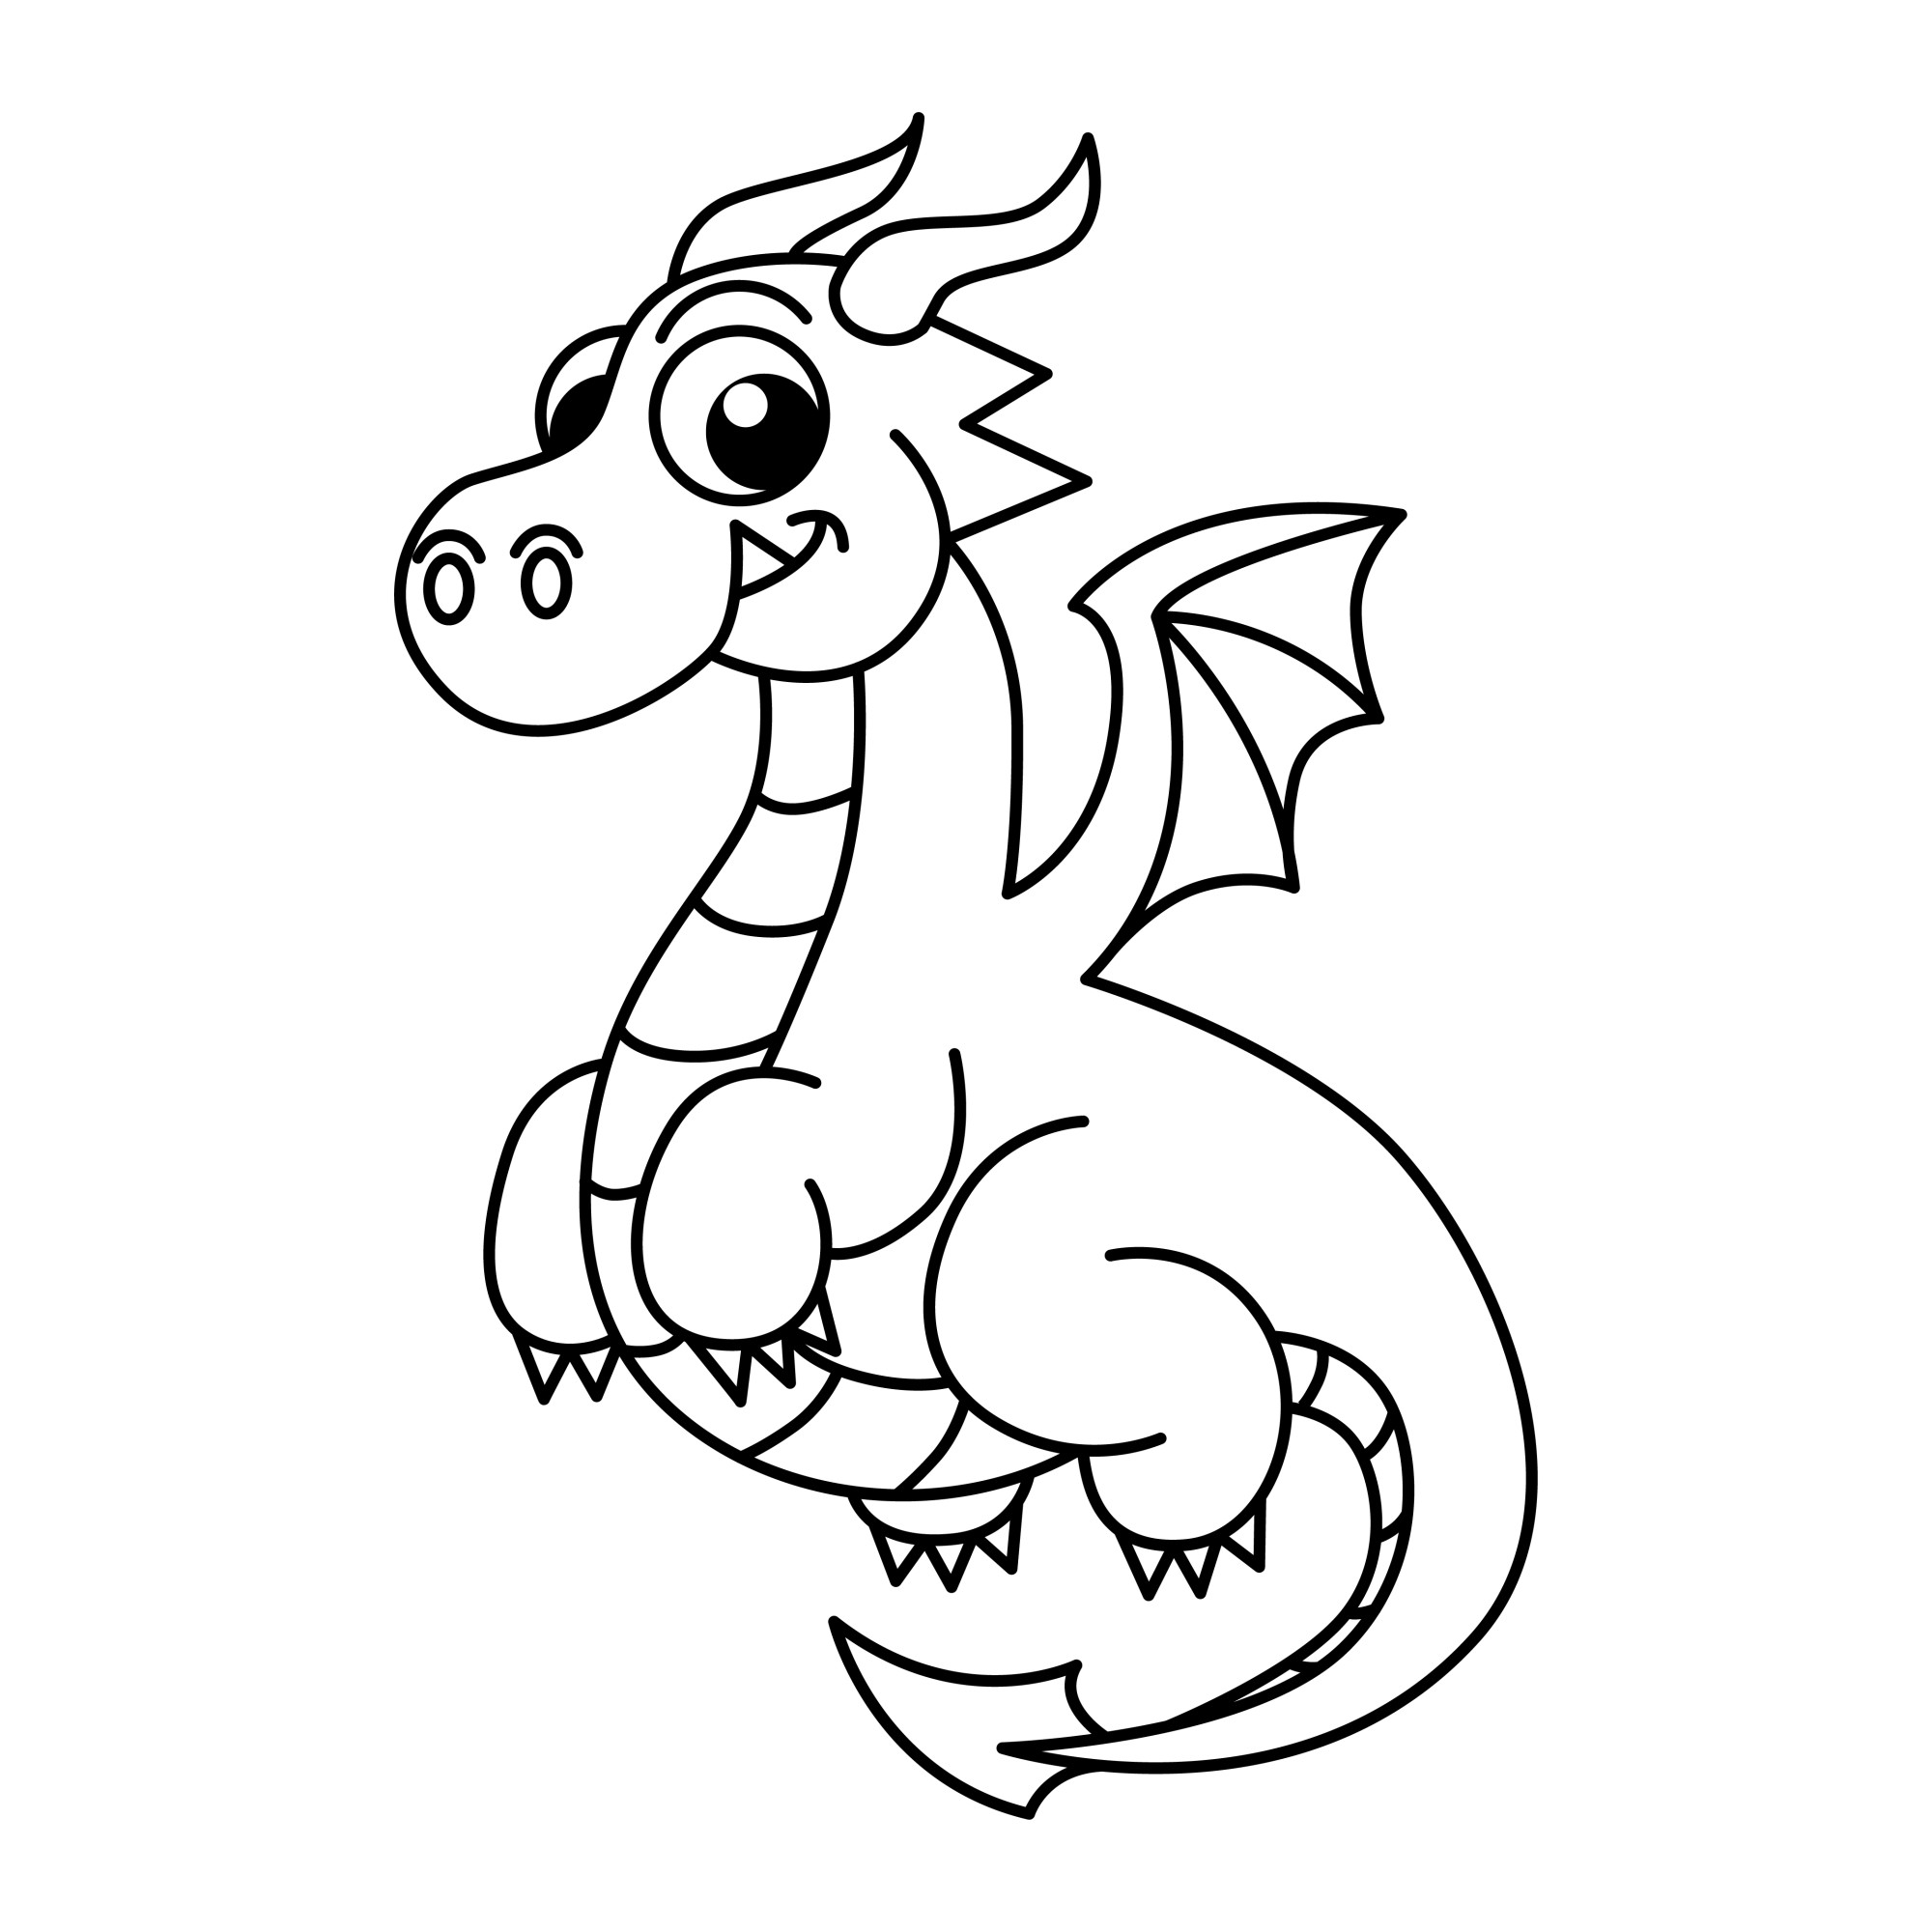 Раскраска для детей: симпатичный маленький дракон